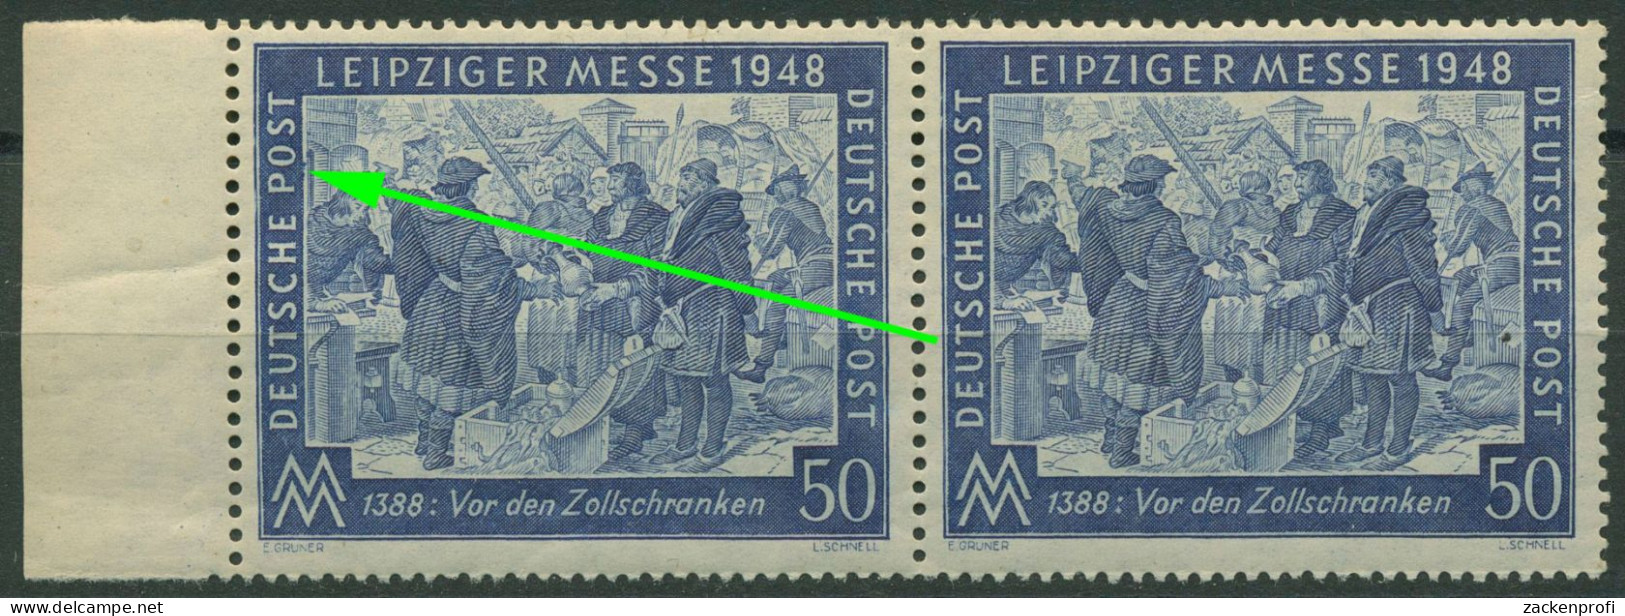 Alliierte Besetzung 1948 Leipziger Messe Mit Plattenfehler 967 I Postfrisch - Nuovi